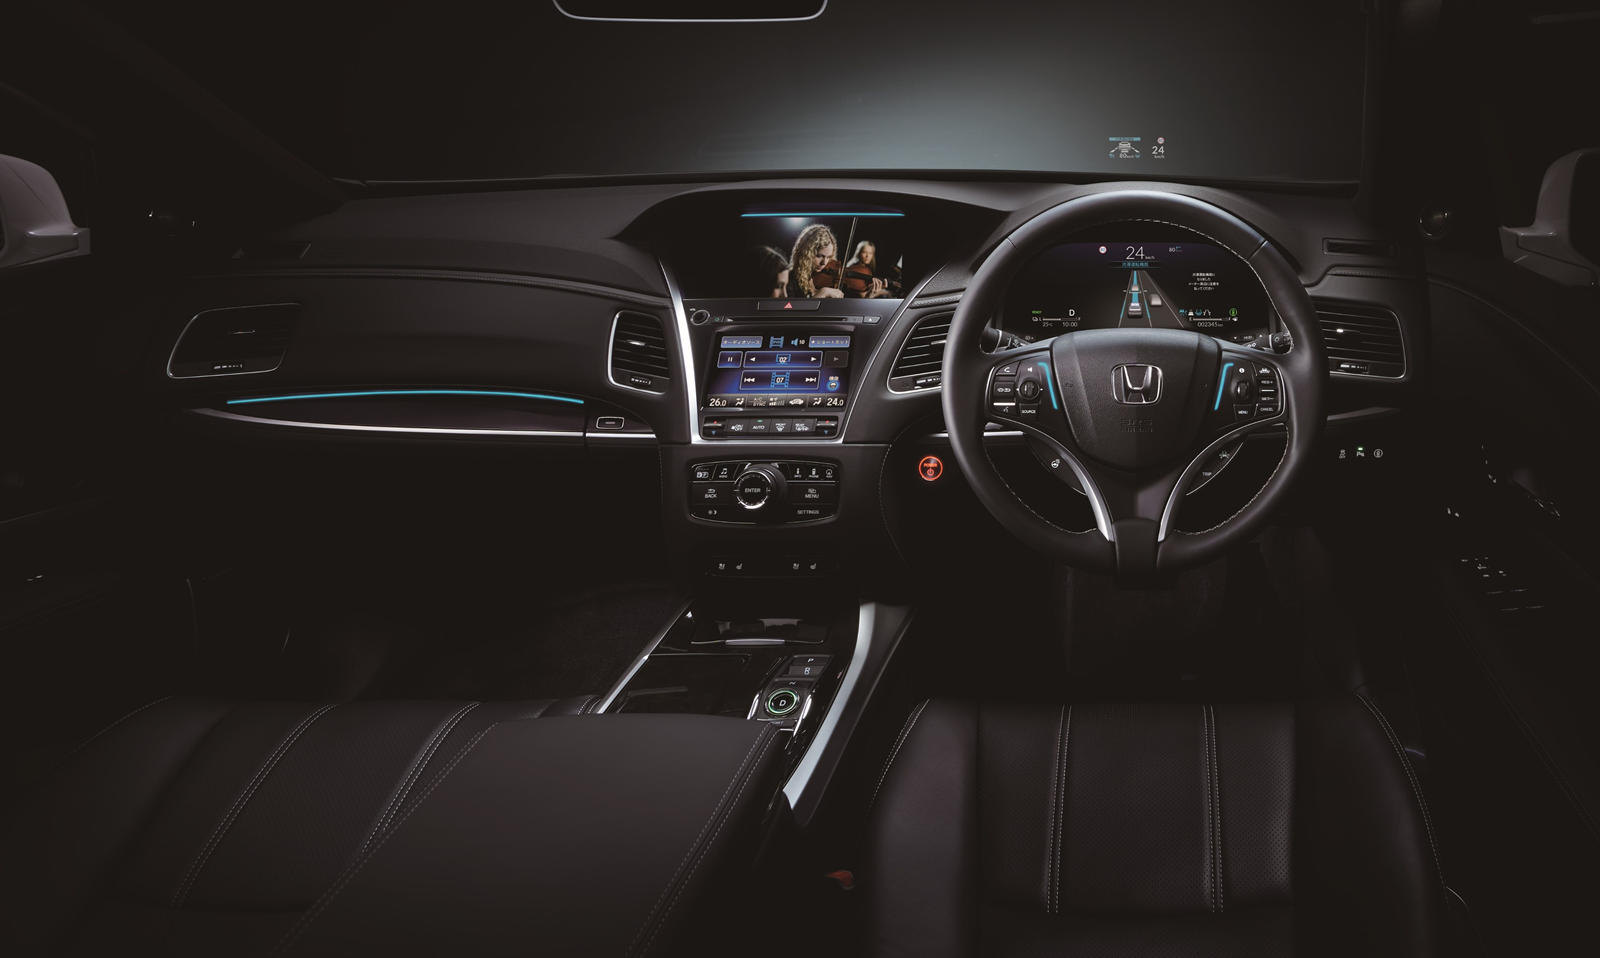 Одним из изюминок Honda Sensing Elite является новая функция Traffic Jam Pilot с технологией автономного вождения 3-го уровня без помощи рук, которая может управлять автомобилем в определенных условиях, например, при движении в условиях интенсивного 